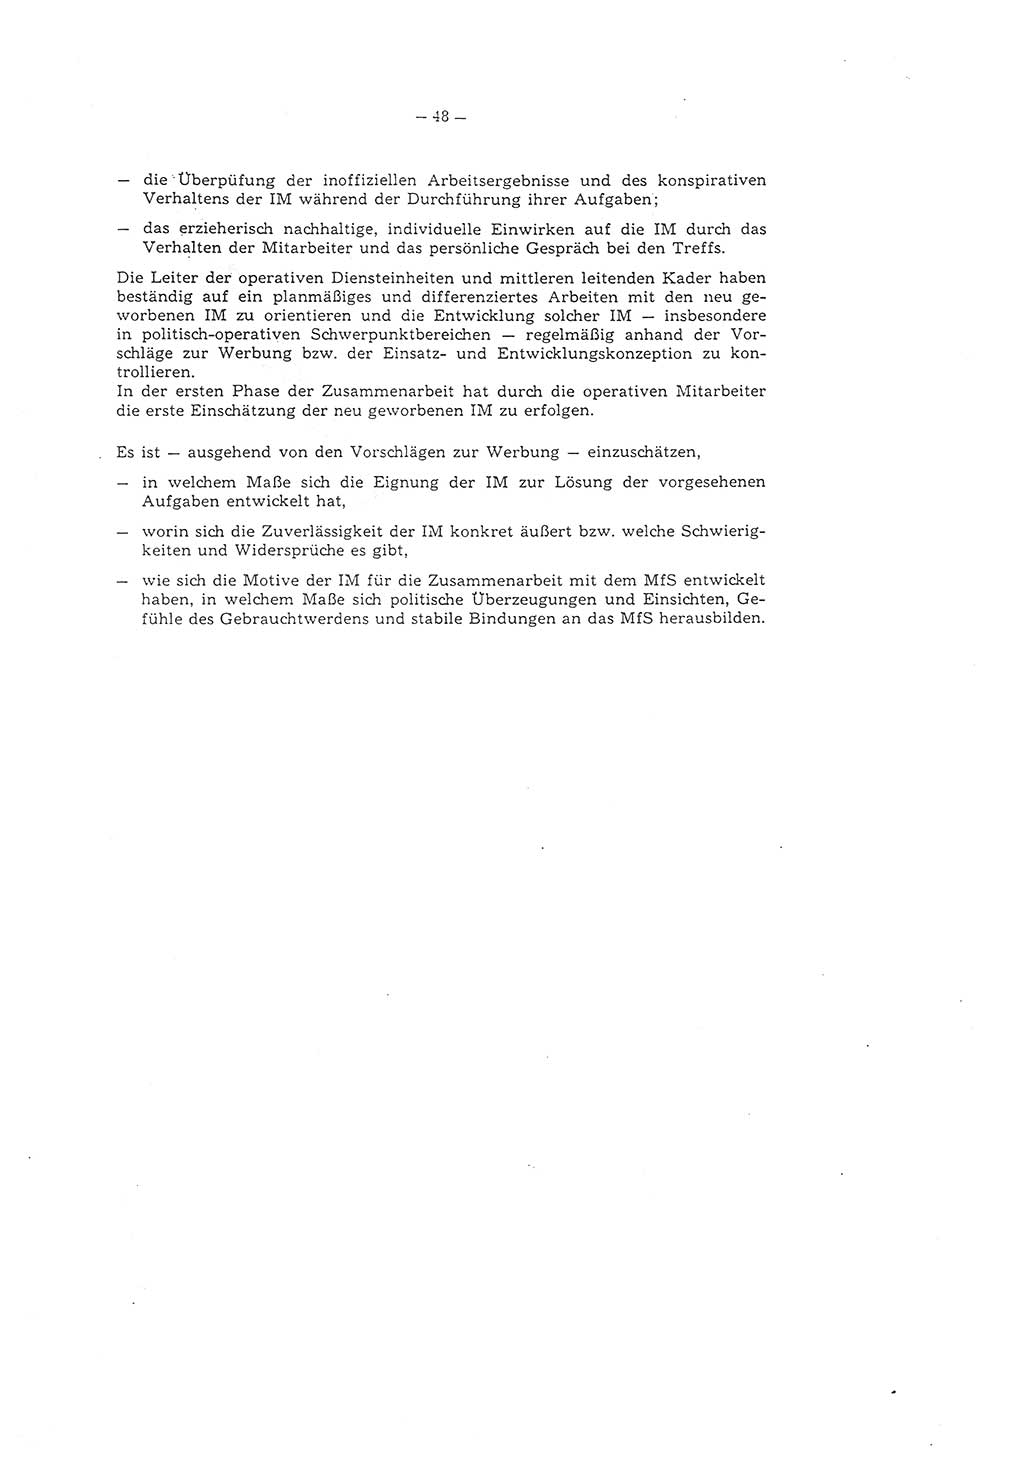 Richtlinie 1/79 für die Arbeit mit Inoffiziellen Mitarbeitern (IM) und Gesellschaftlichen Mitarbeitern für Sicherheit (GMS), Deutsche Demokratische Republik (DDR), Ministerium für Staatssicherheit (MfS), Der Minister (Mielke), Geheime Verschlußsache (GVS) ooo8-1/79, Berlin 1979, Seite 48 (RL 1/79 DDR MfS Min. GVS ooo8-1/79 1979, S. 48)